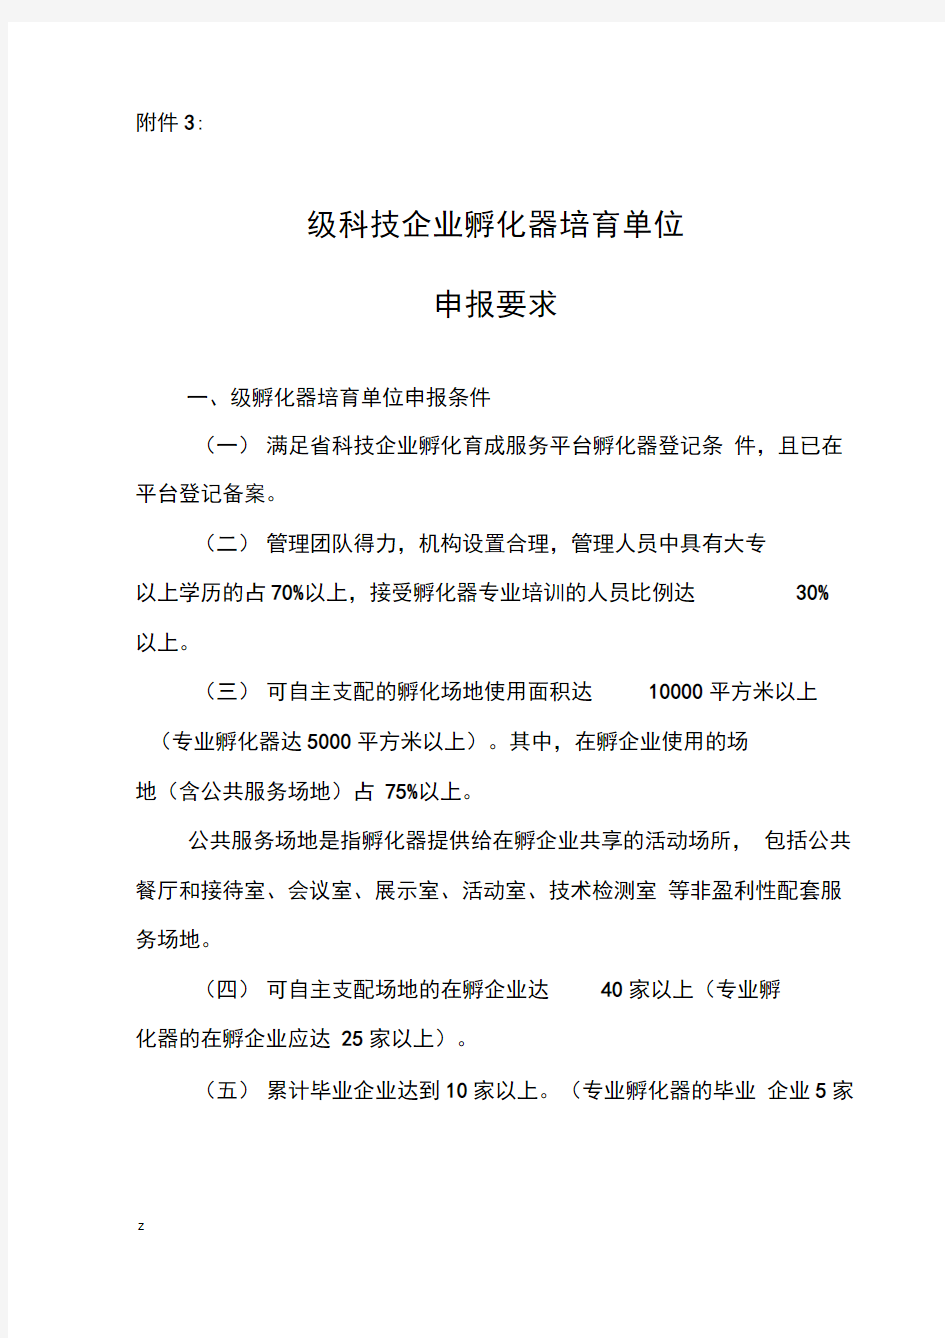 广东省国家级科技企业孵化器培育单位申报要求孵化器申报要求